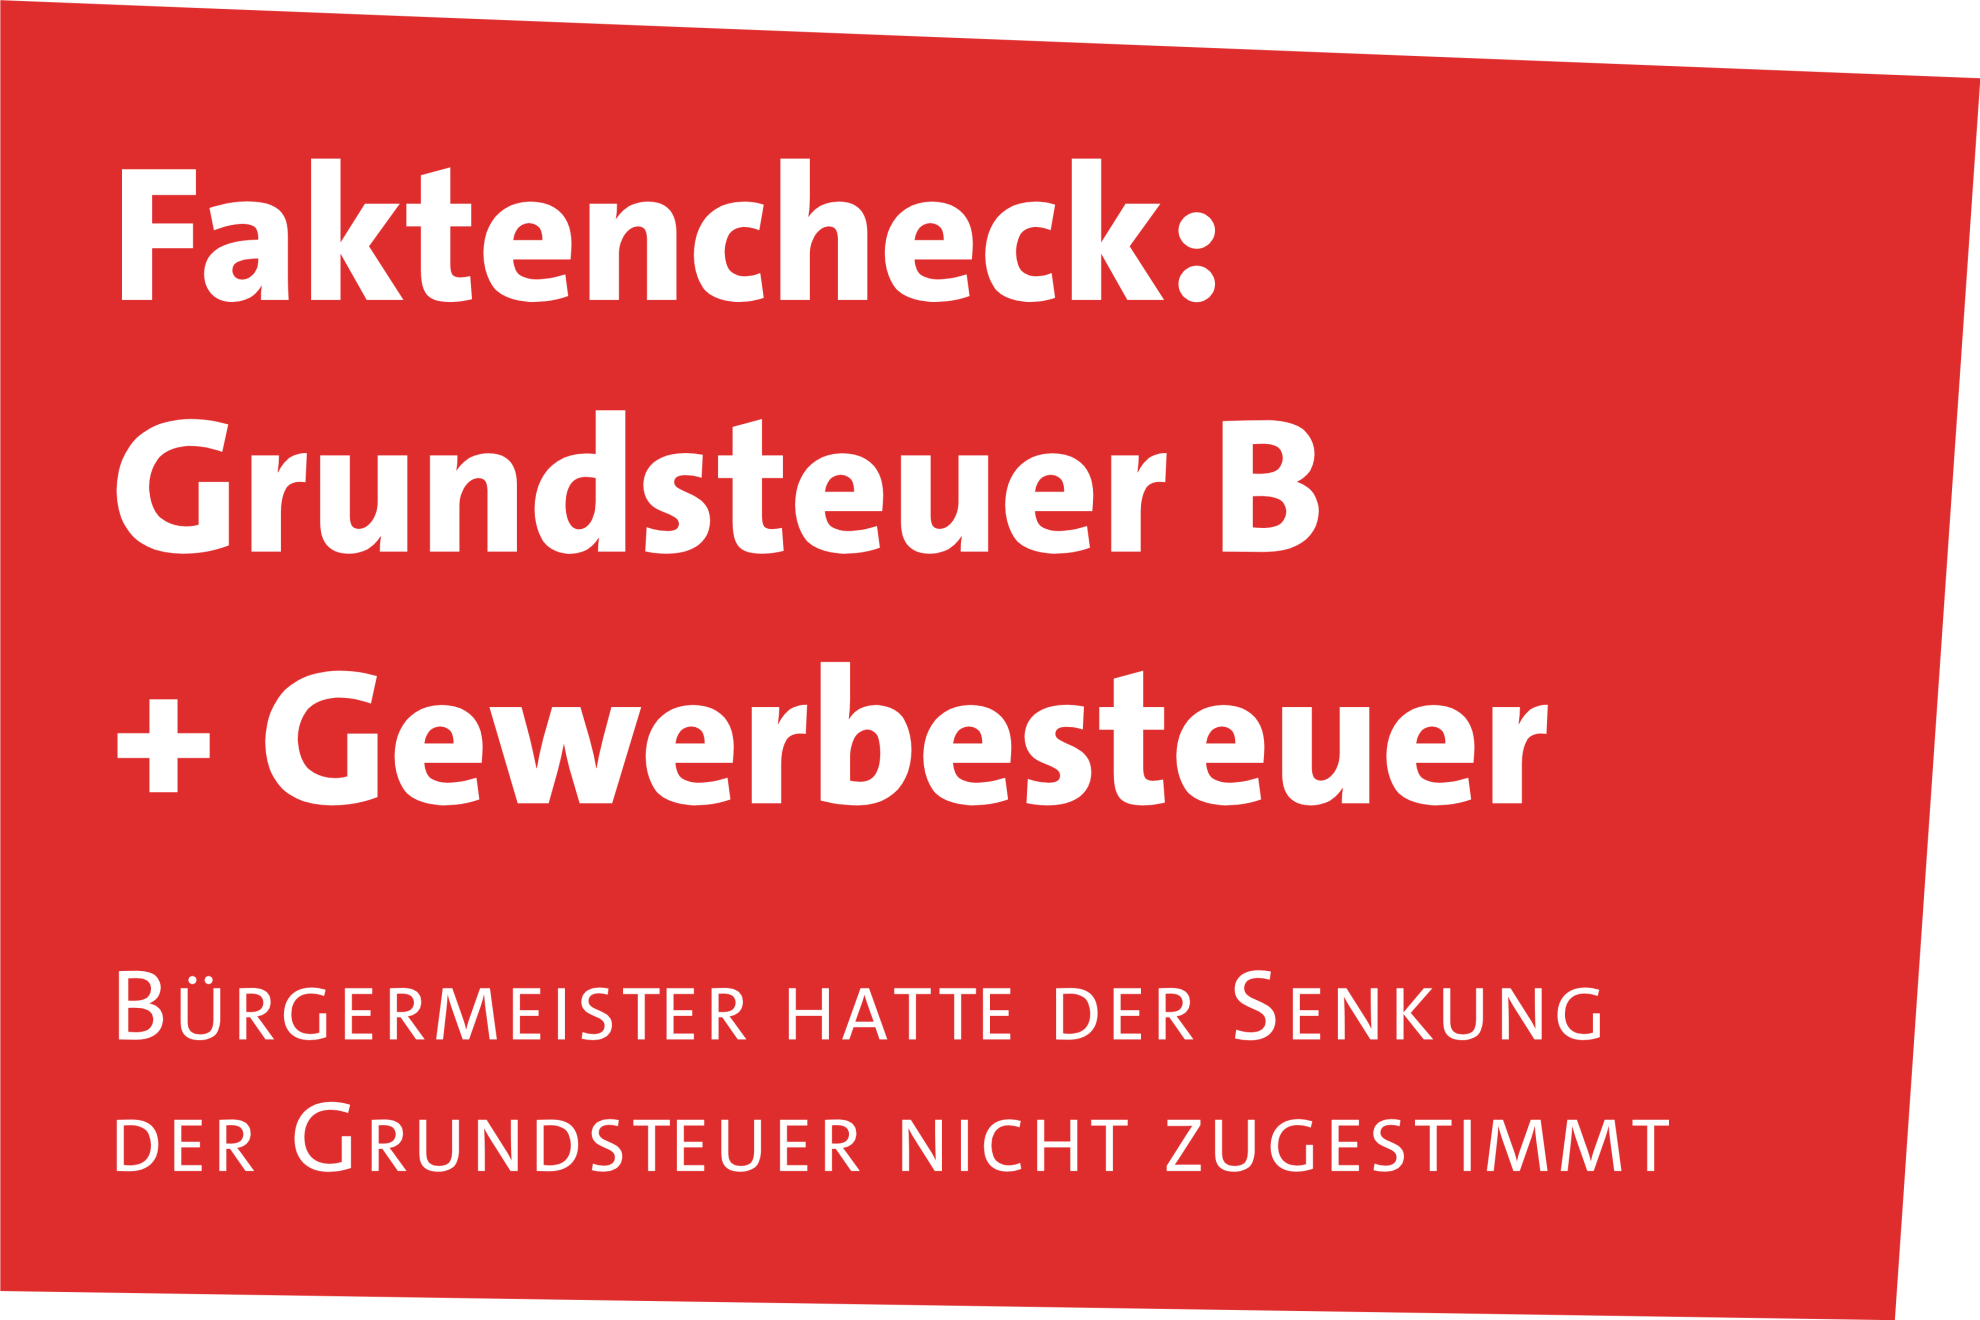 20230513_HP_Faktencheck_Grundsteuer_Gewerbesteuer_Buergermeistersteuer_SPD_Fraktion_Troisdorf_Steuersenkung